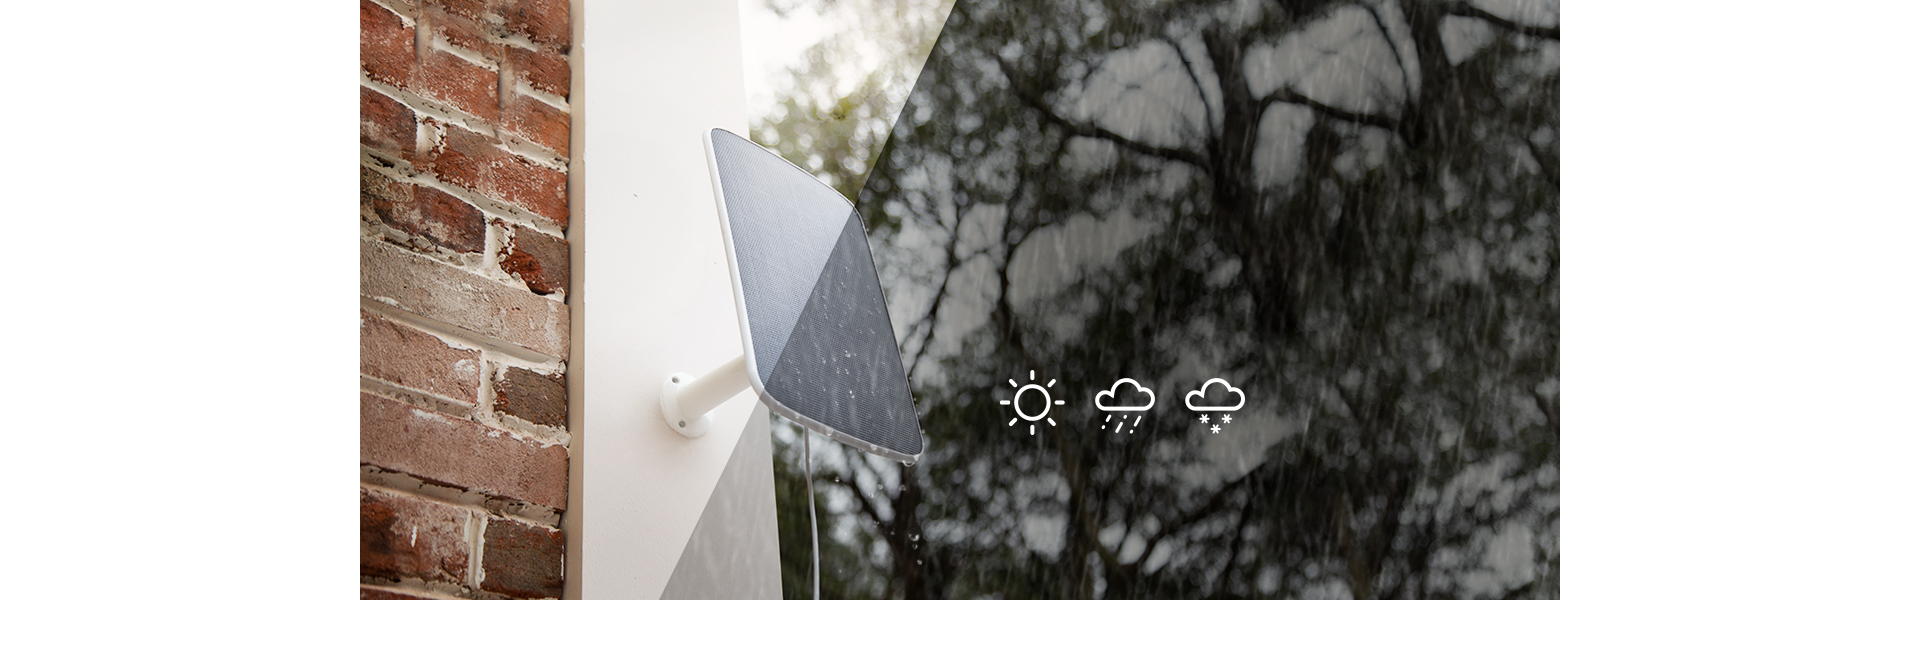 Tấm pin Ezviz năng lượng mặt trời chống nước mưa